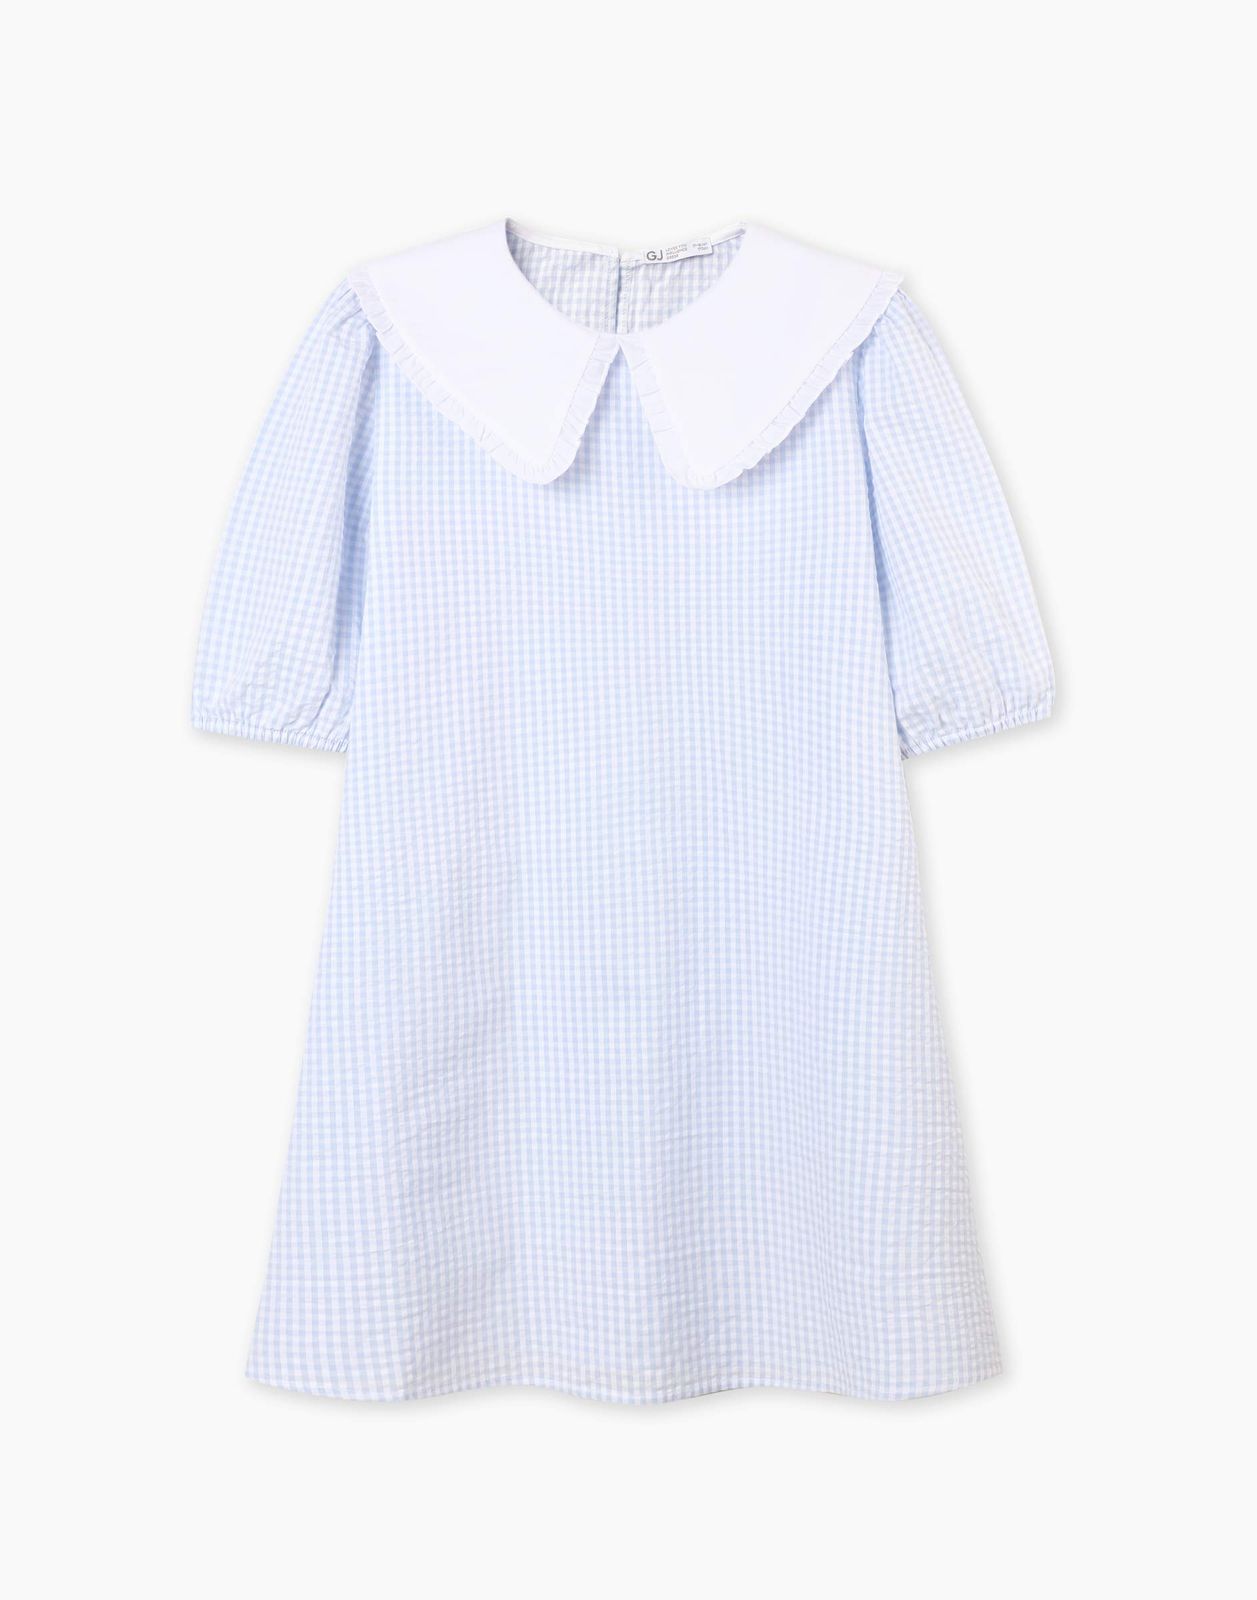 Платье детское Gloria Jeans GDR028214, голубой/белый, 140